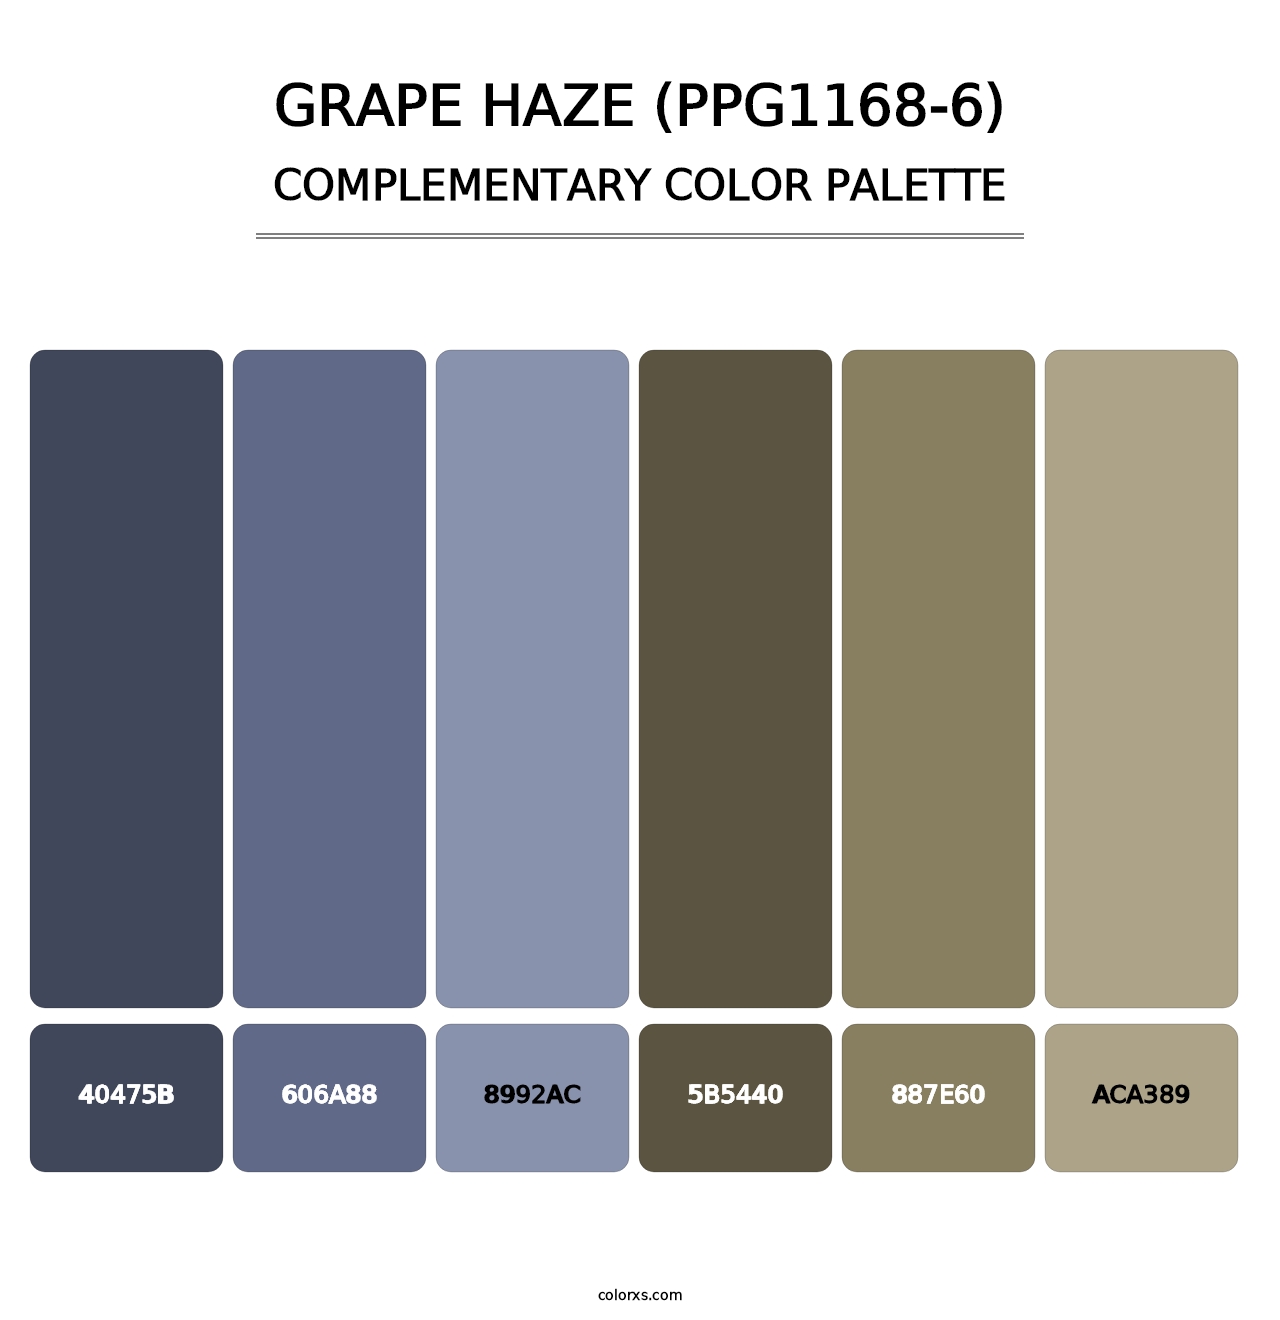 Grape Haze (PPG1168-6) - Complementary Color Palette